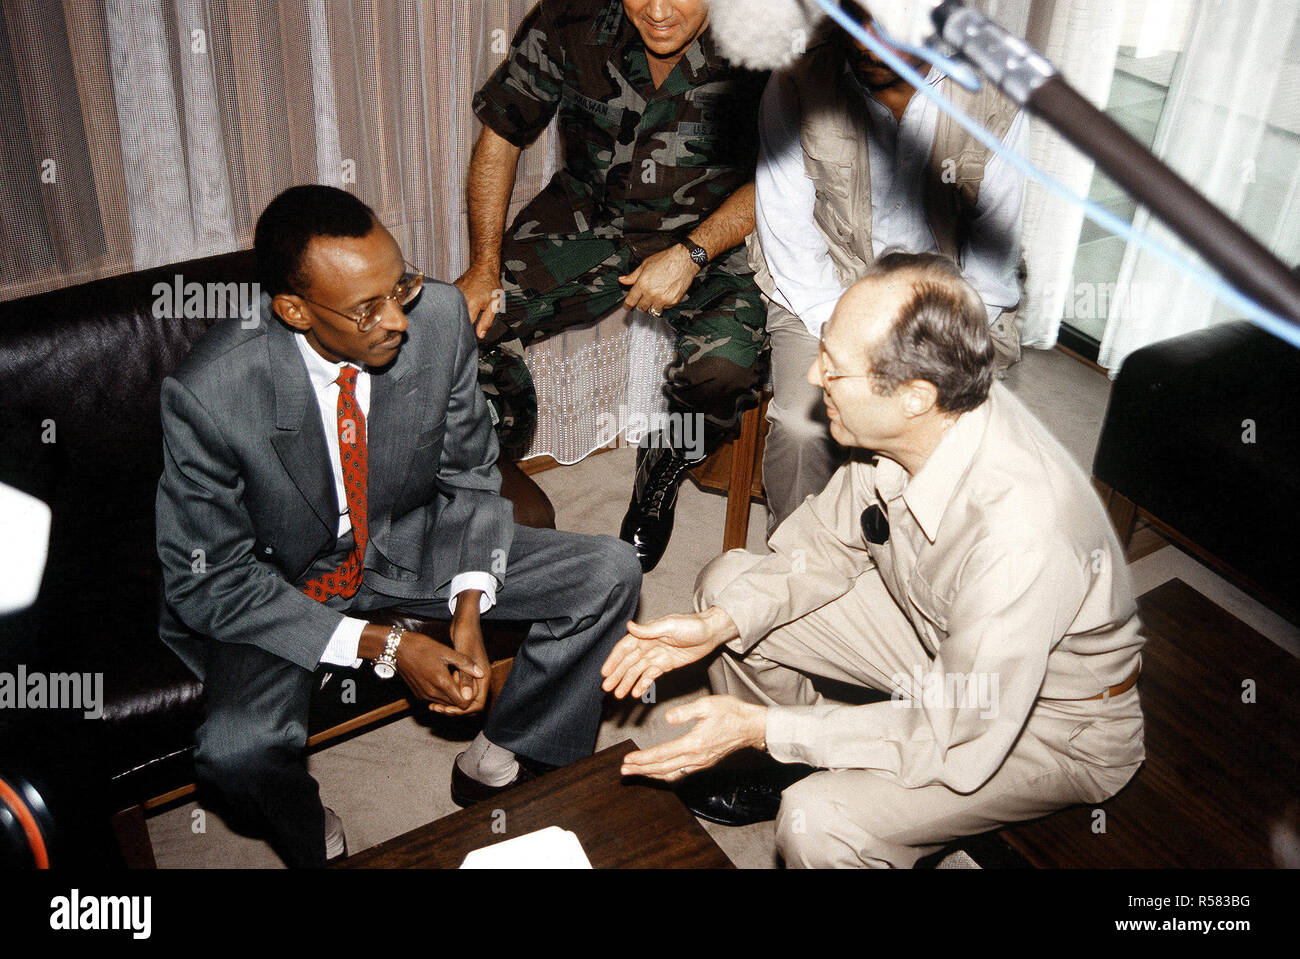 1994 - Le secrétaire américain à la Défense William Perry traite de la guerre civile rwandaise et situation des réfugiés avec le président rwandais Paul Kagami durant la visite à Kigali du secrétaire. Banque D'Images